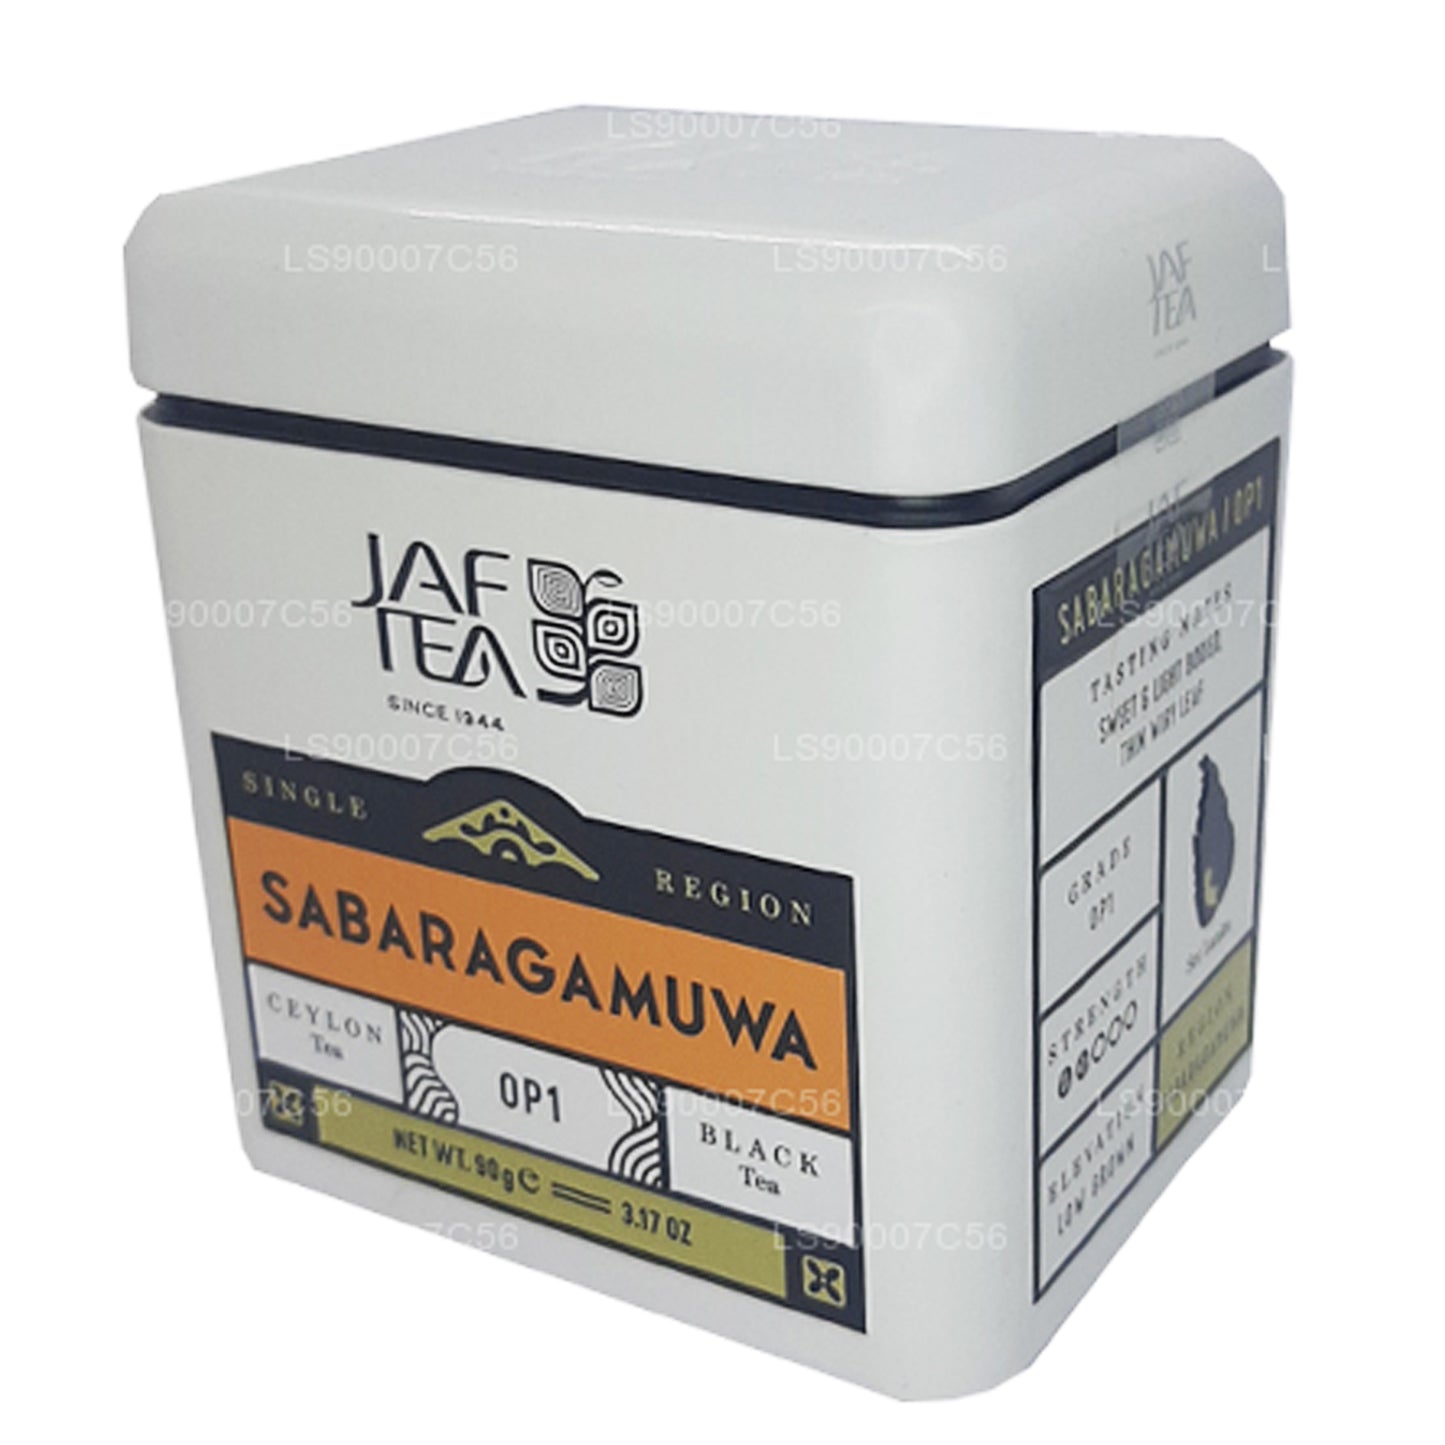 Jaf Tea Single Region Collection Sabaragamuwa OP1 (90g) Tin